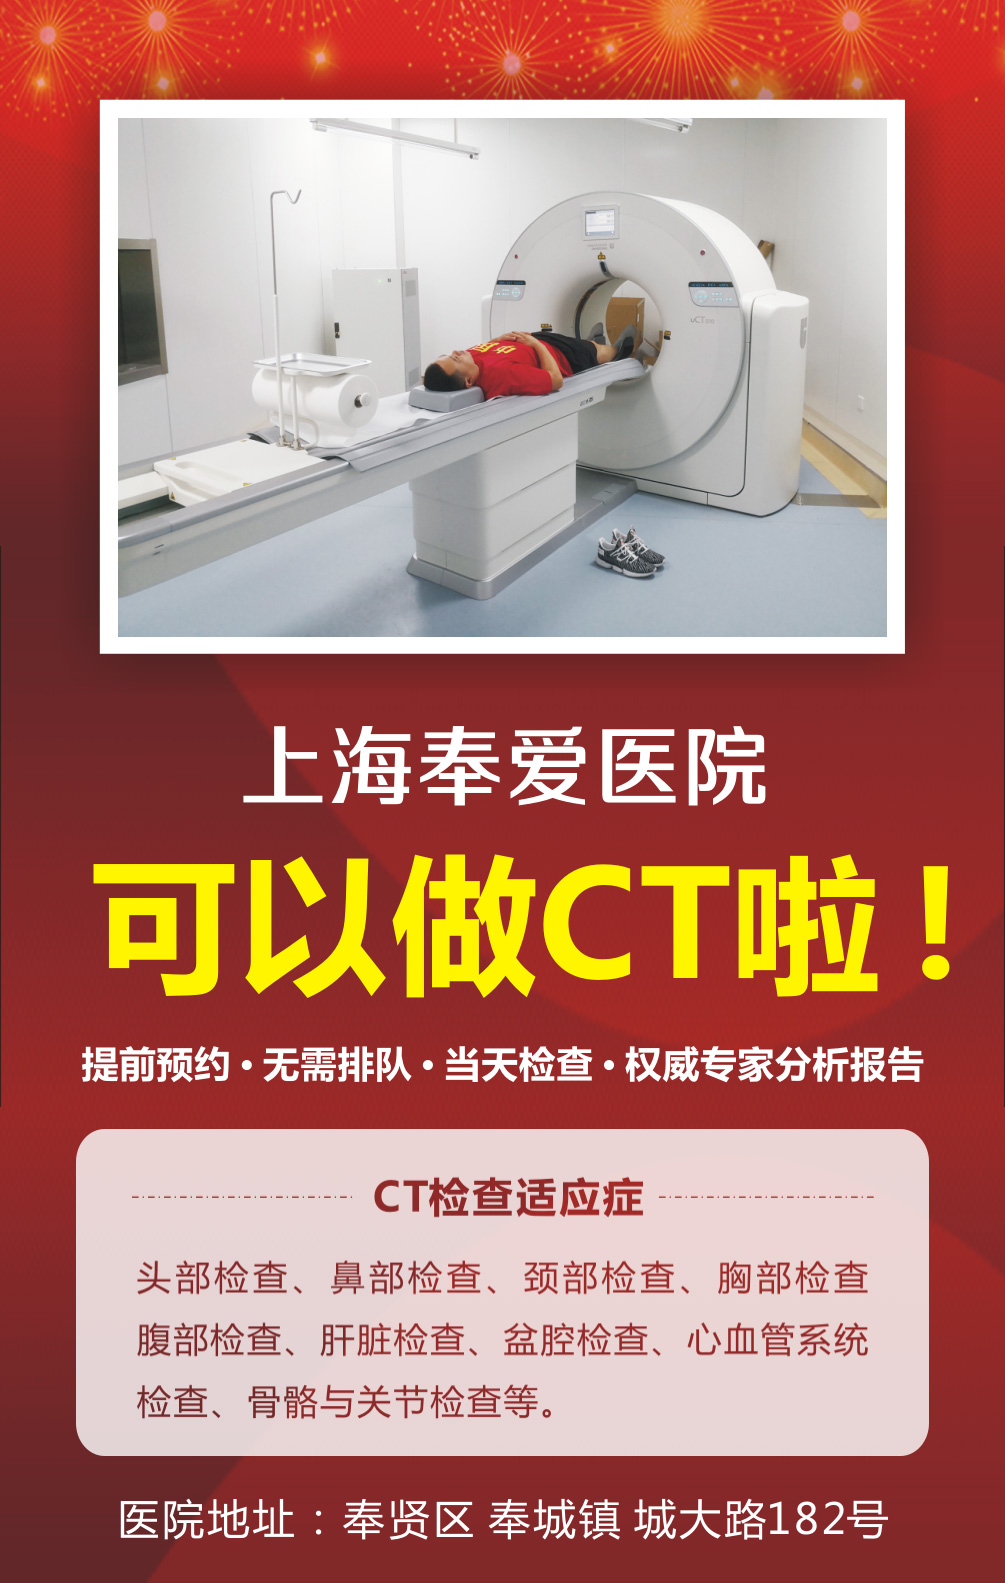 上海膚康醫院有限公司CT檢查